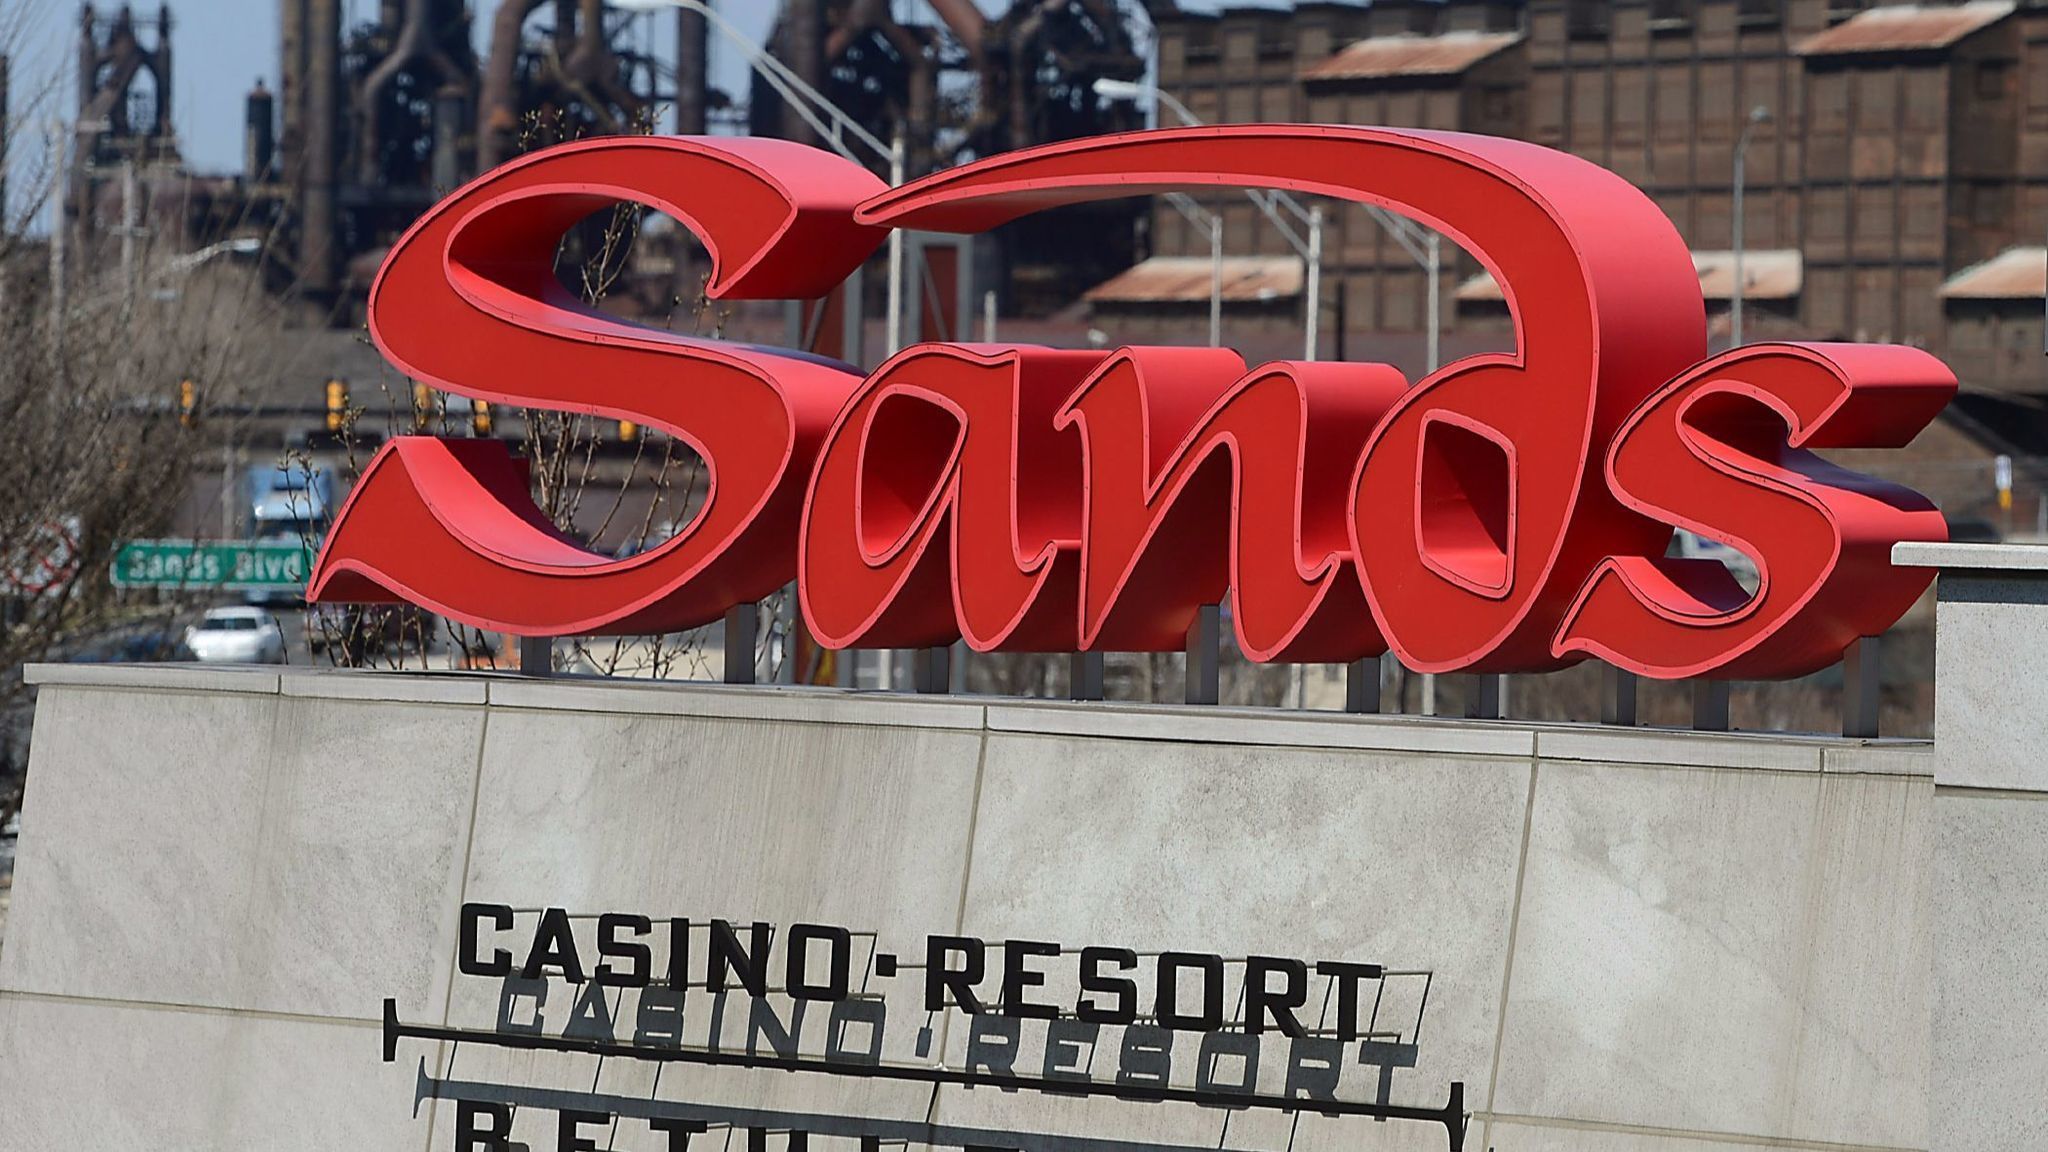 Sands casino online gambling poker